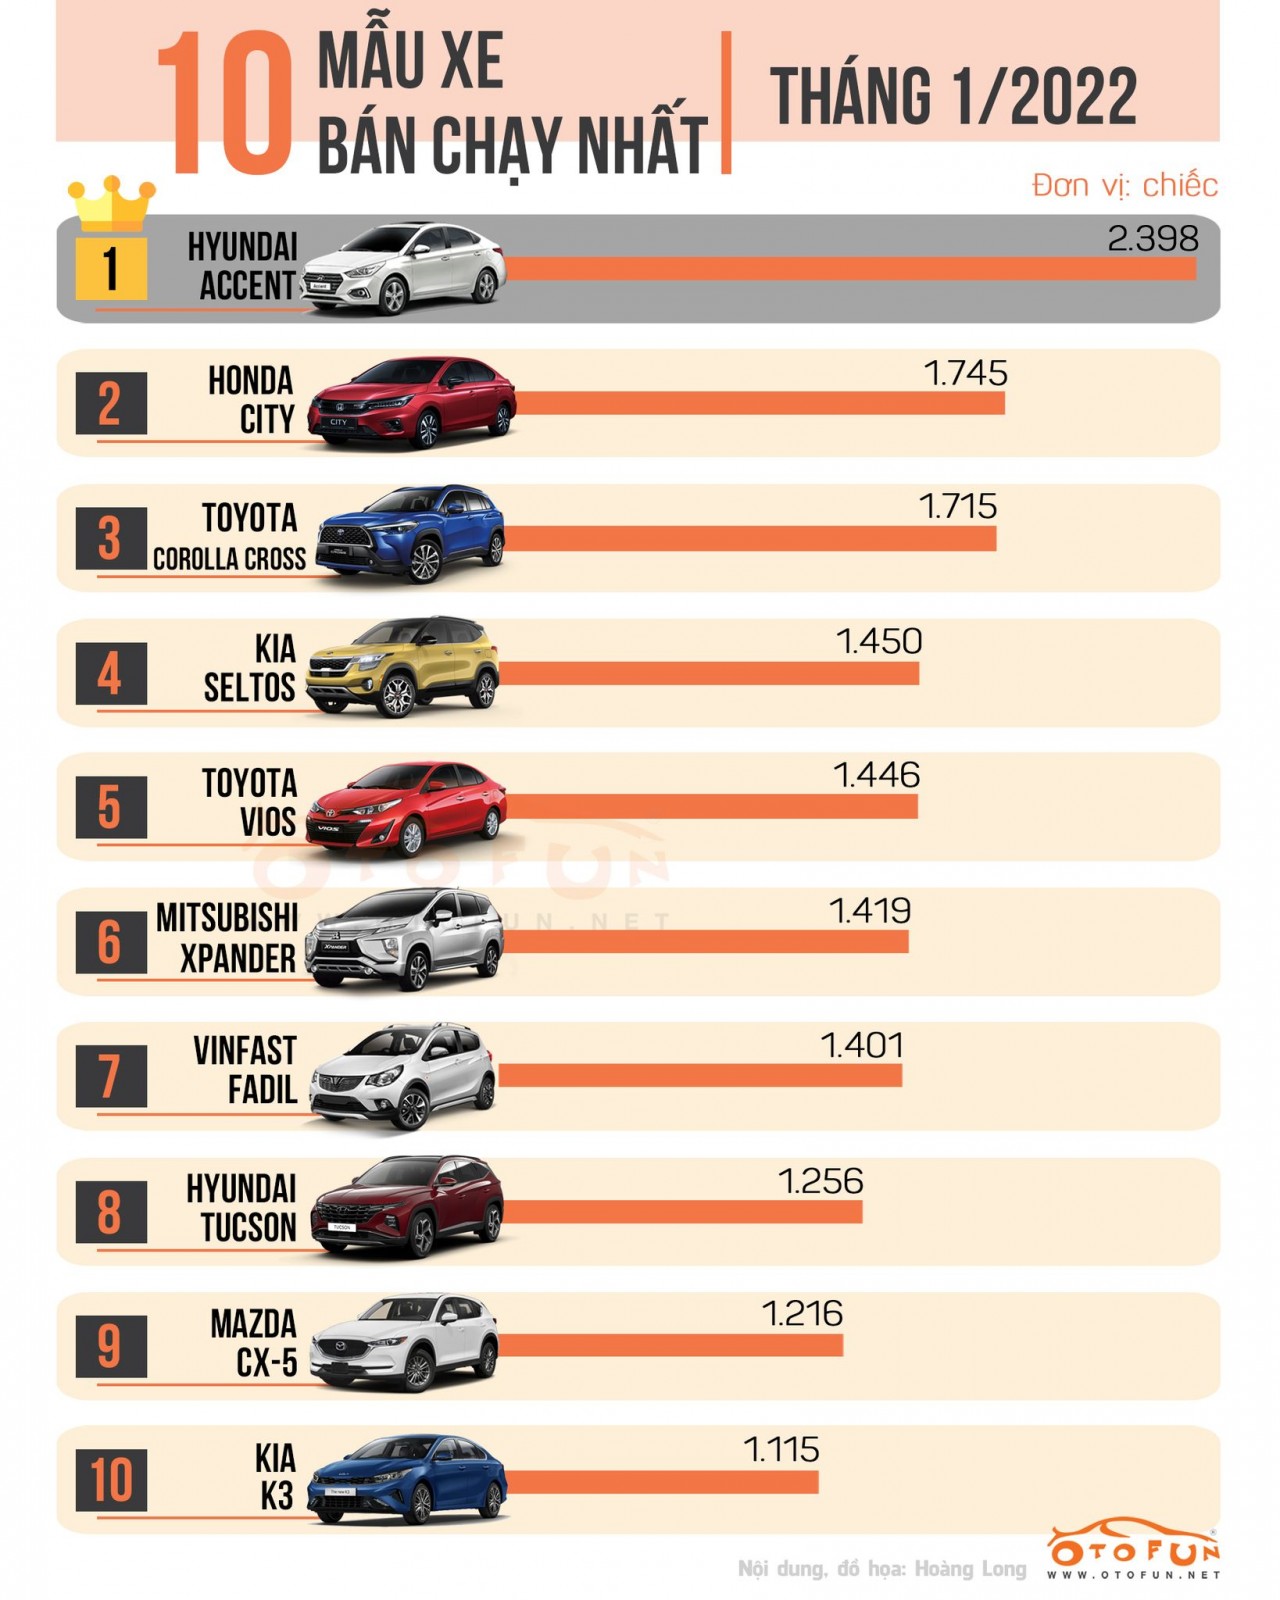 [Infographic] Top 10 xe bán chạy nhất tháng 1/2022